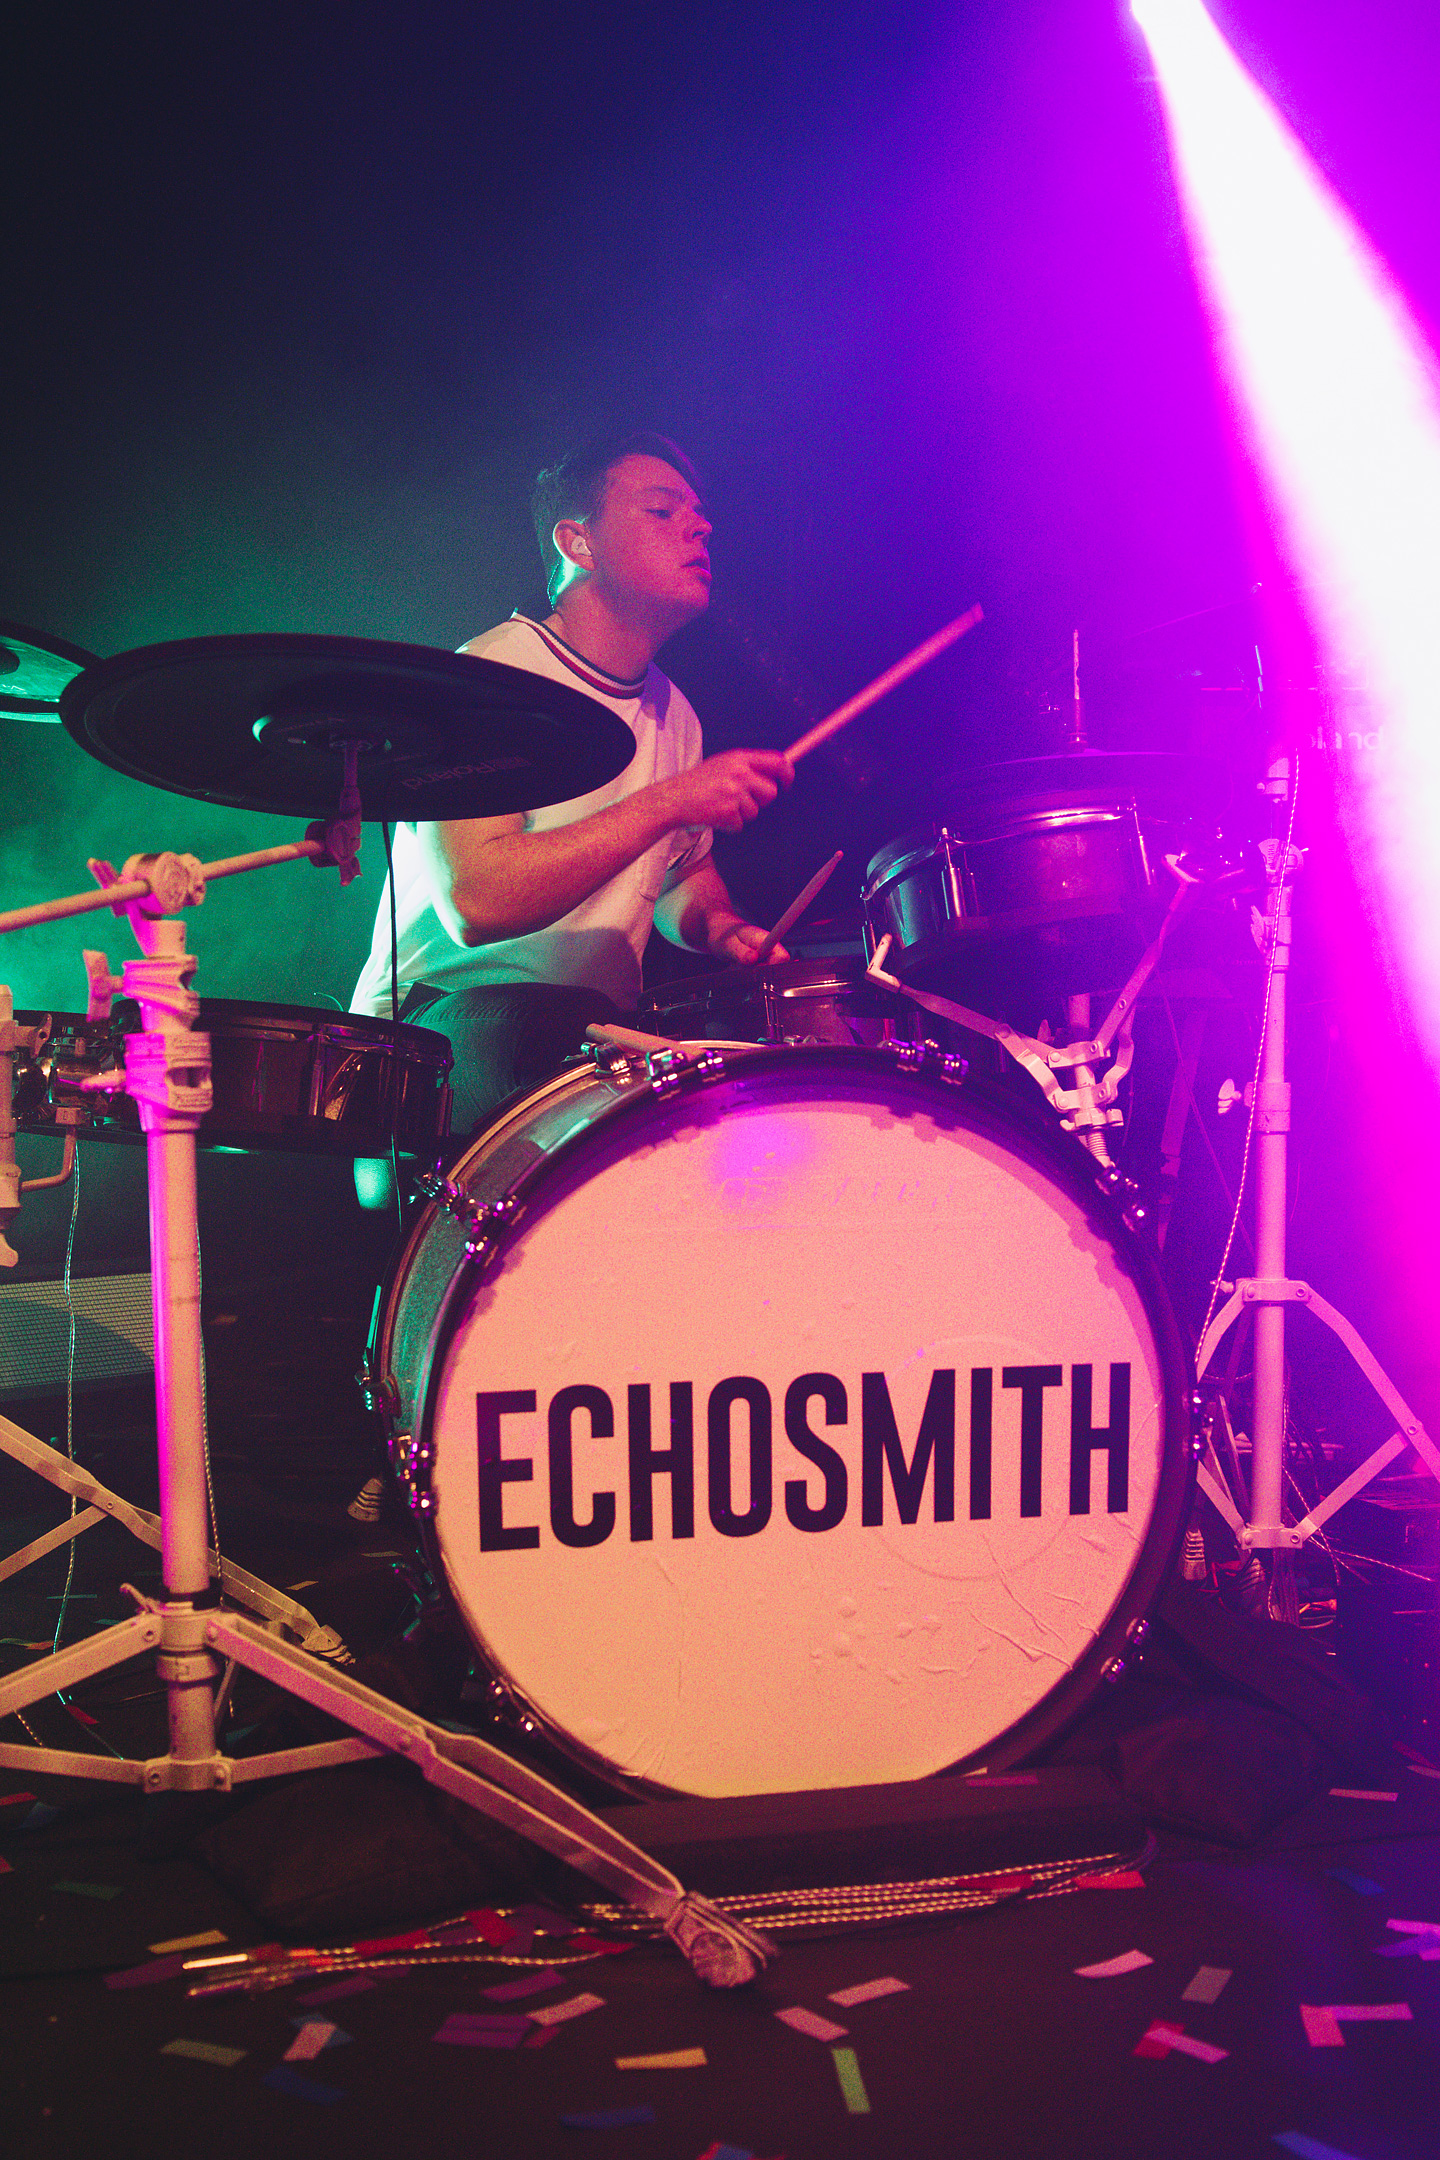 Echosmith - Concert Photos - Denver, Colorado 2018